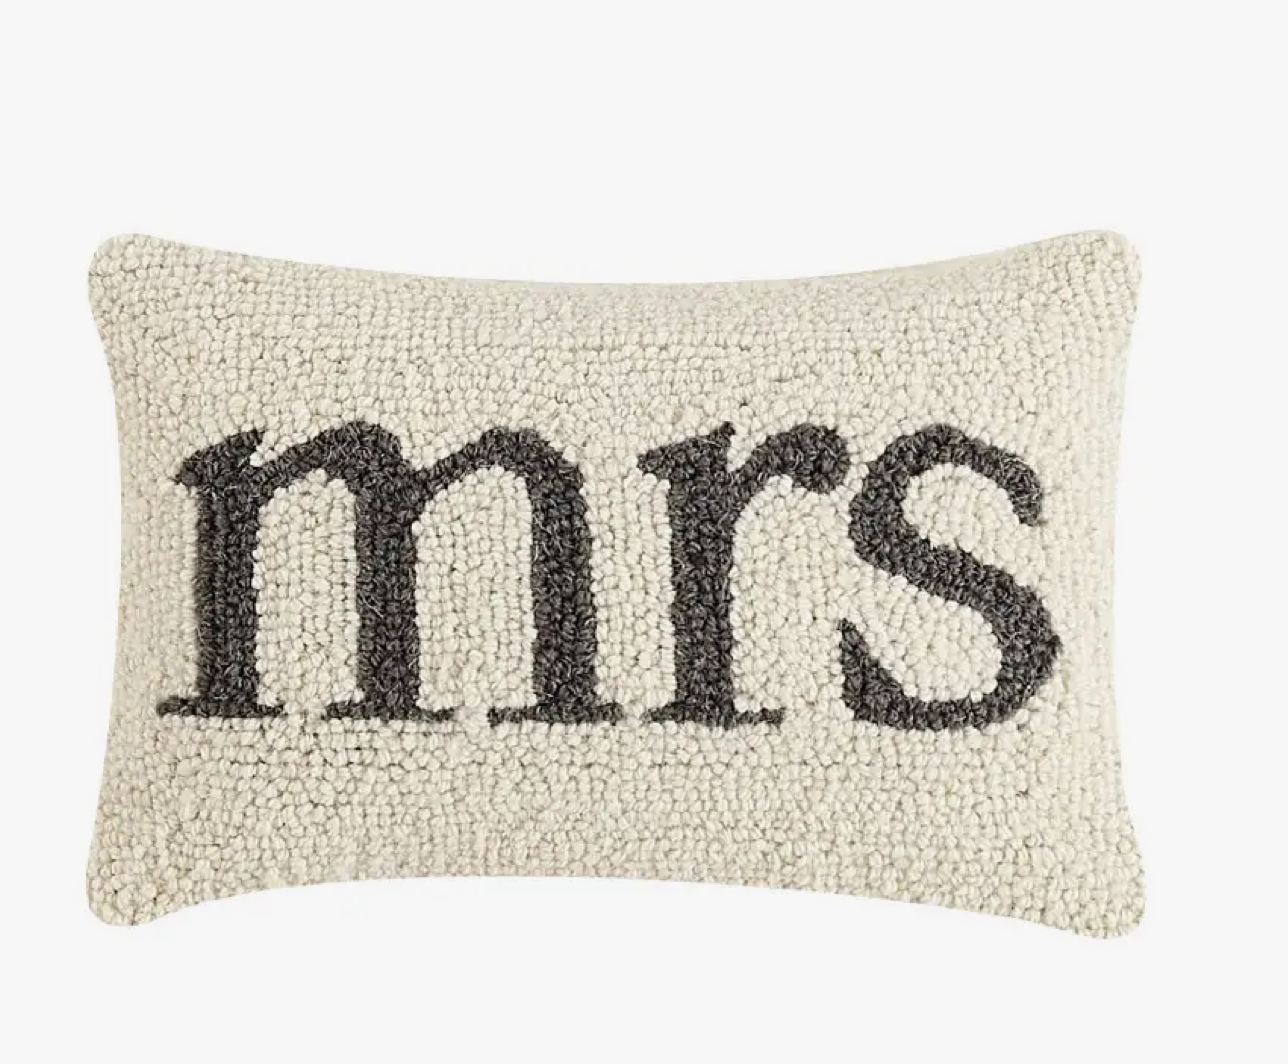 Mrs. Hook Pillow